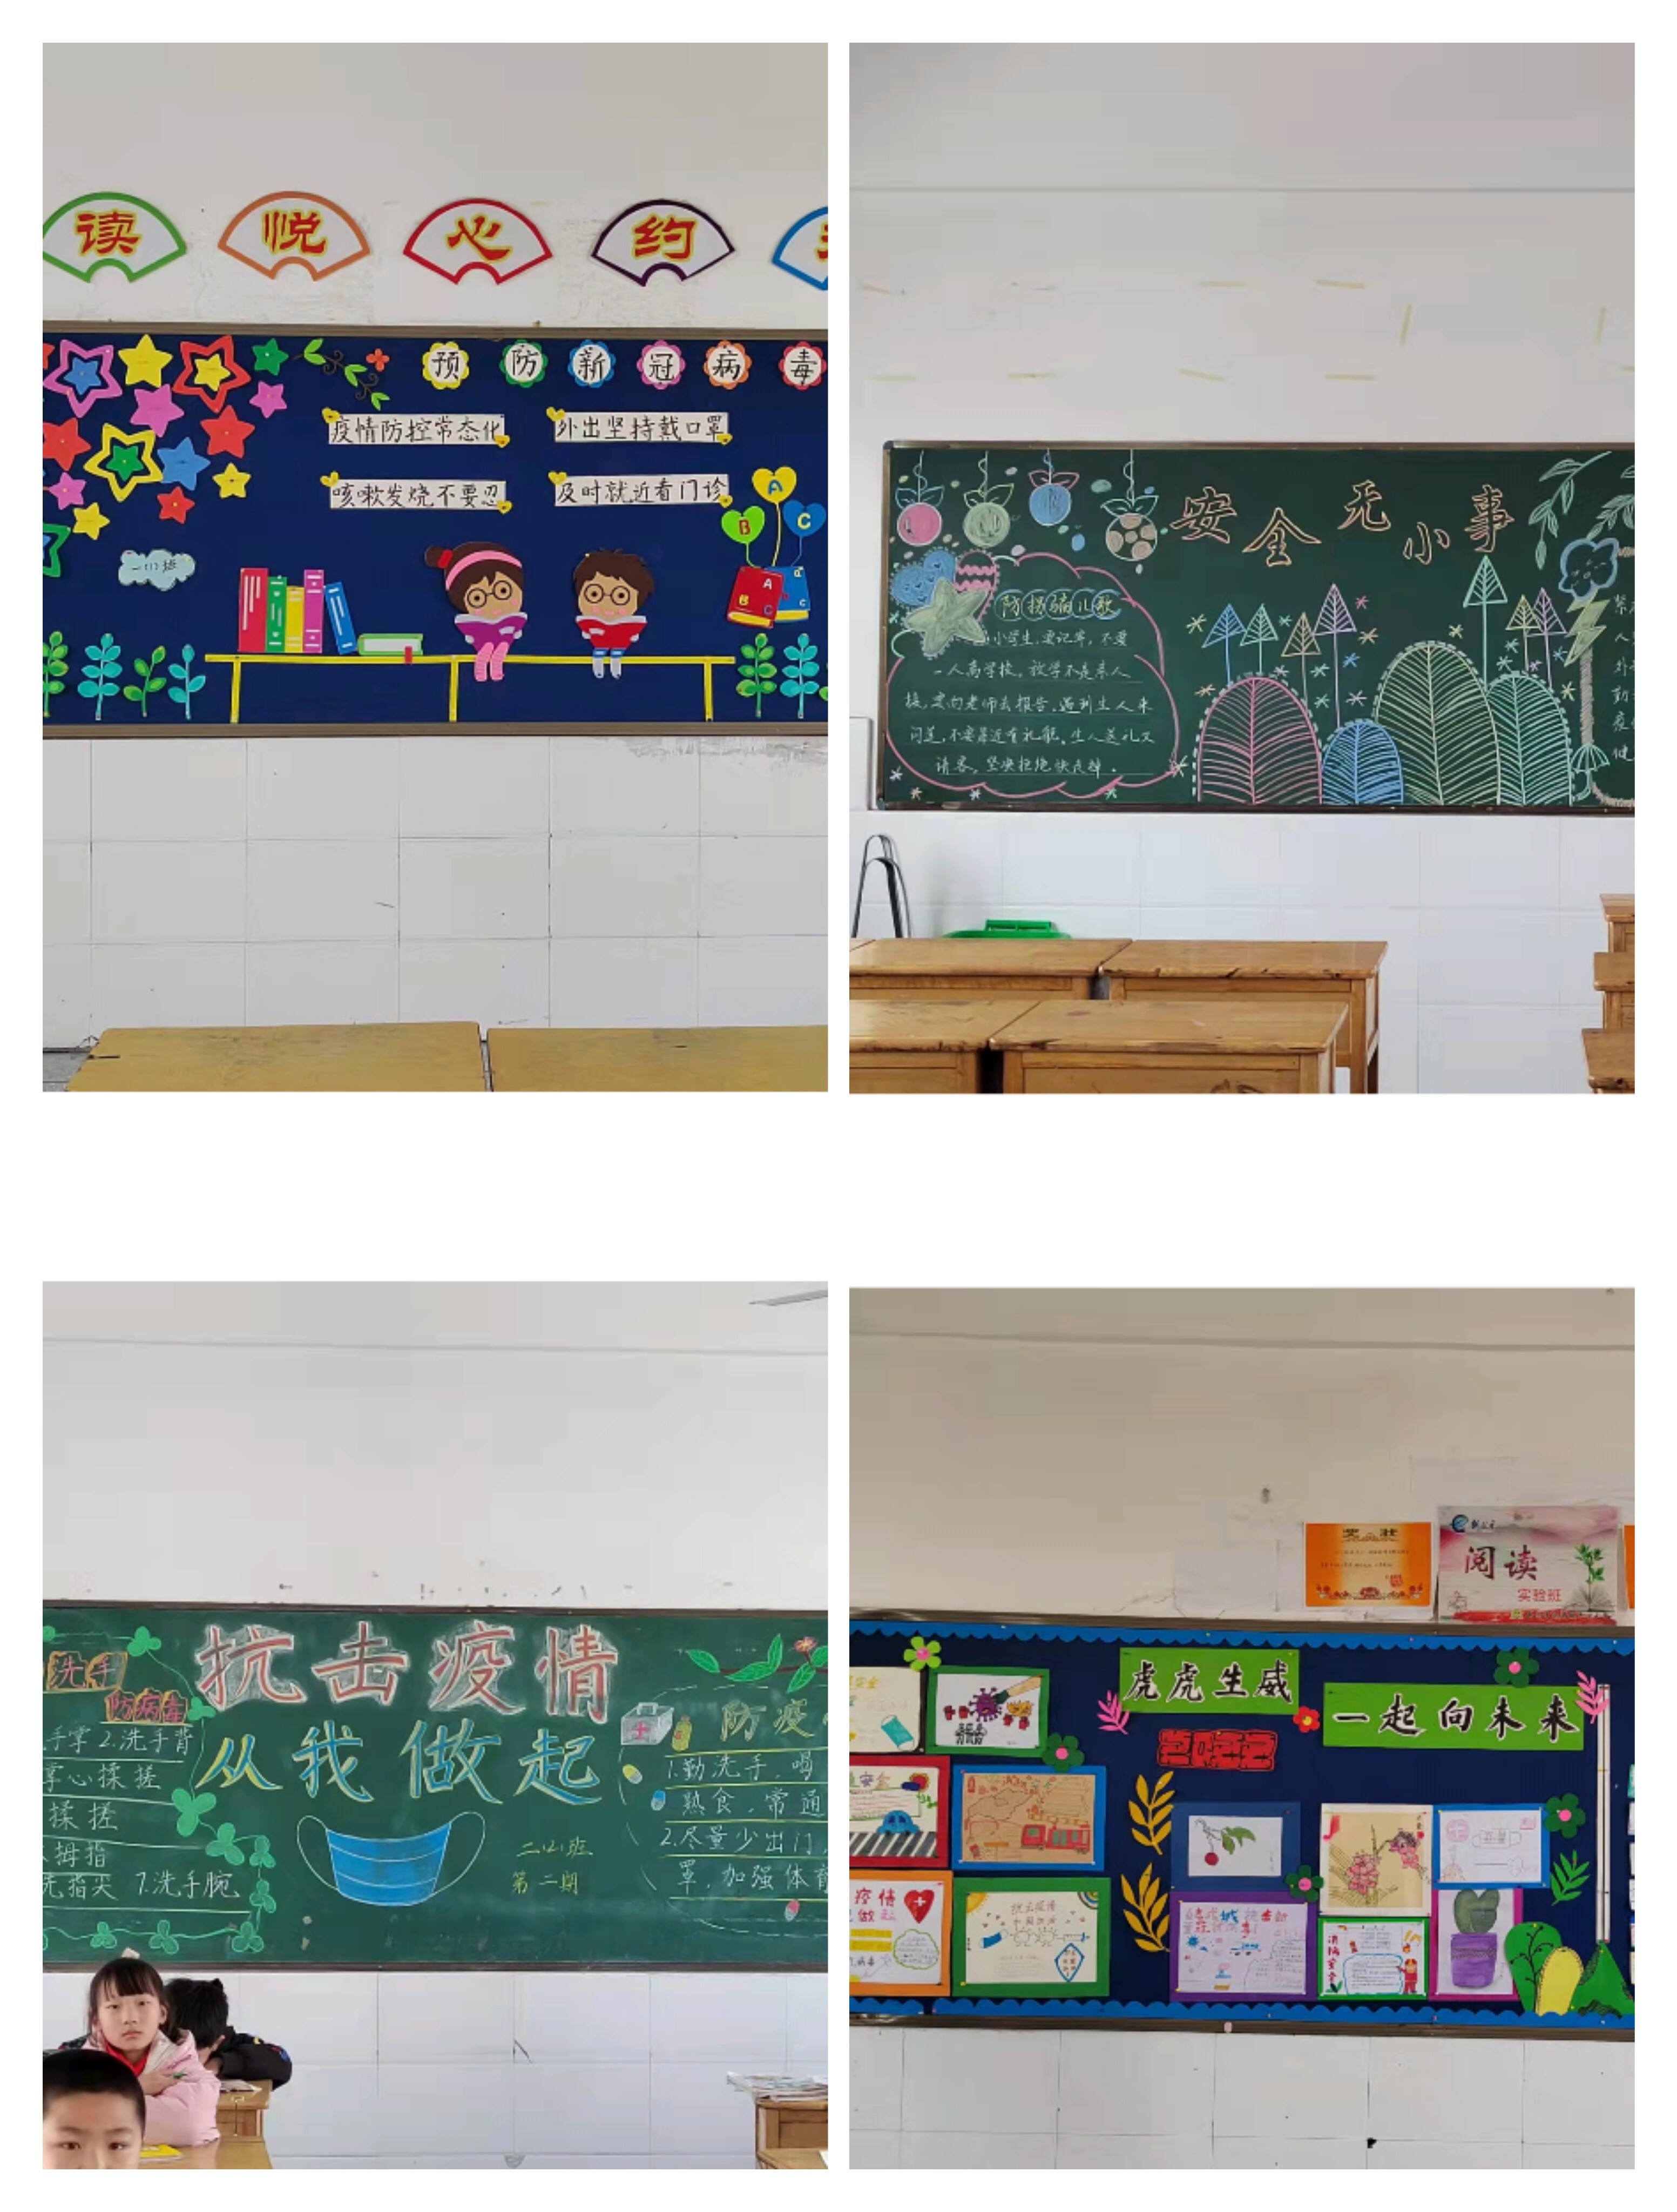 让墙壁说话，让教室育人 ——窑湾小学开展黑板报评比活动